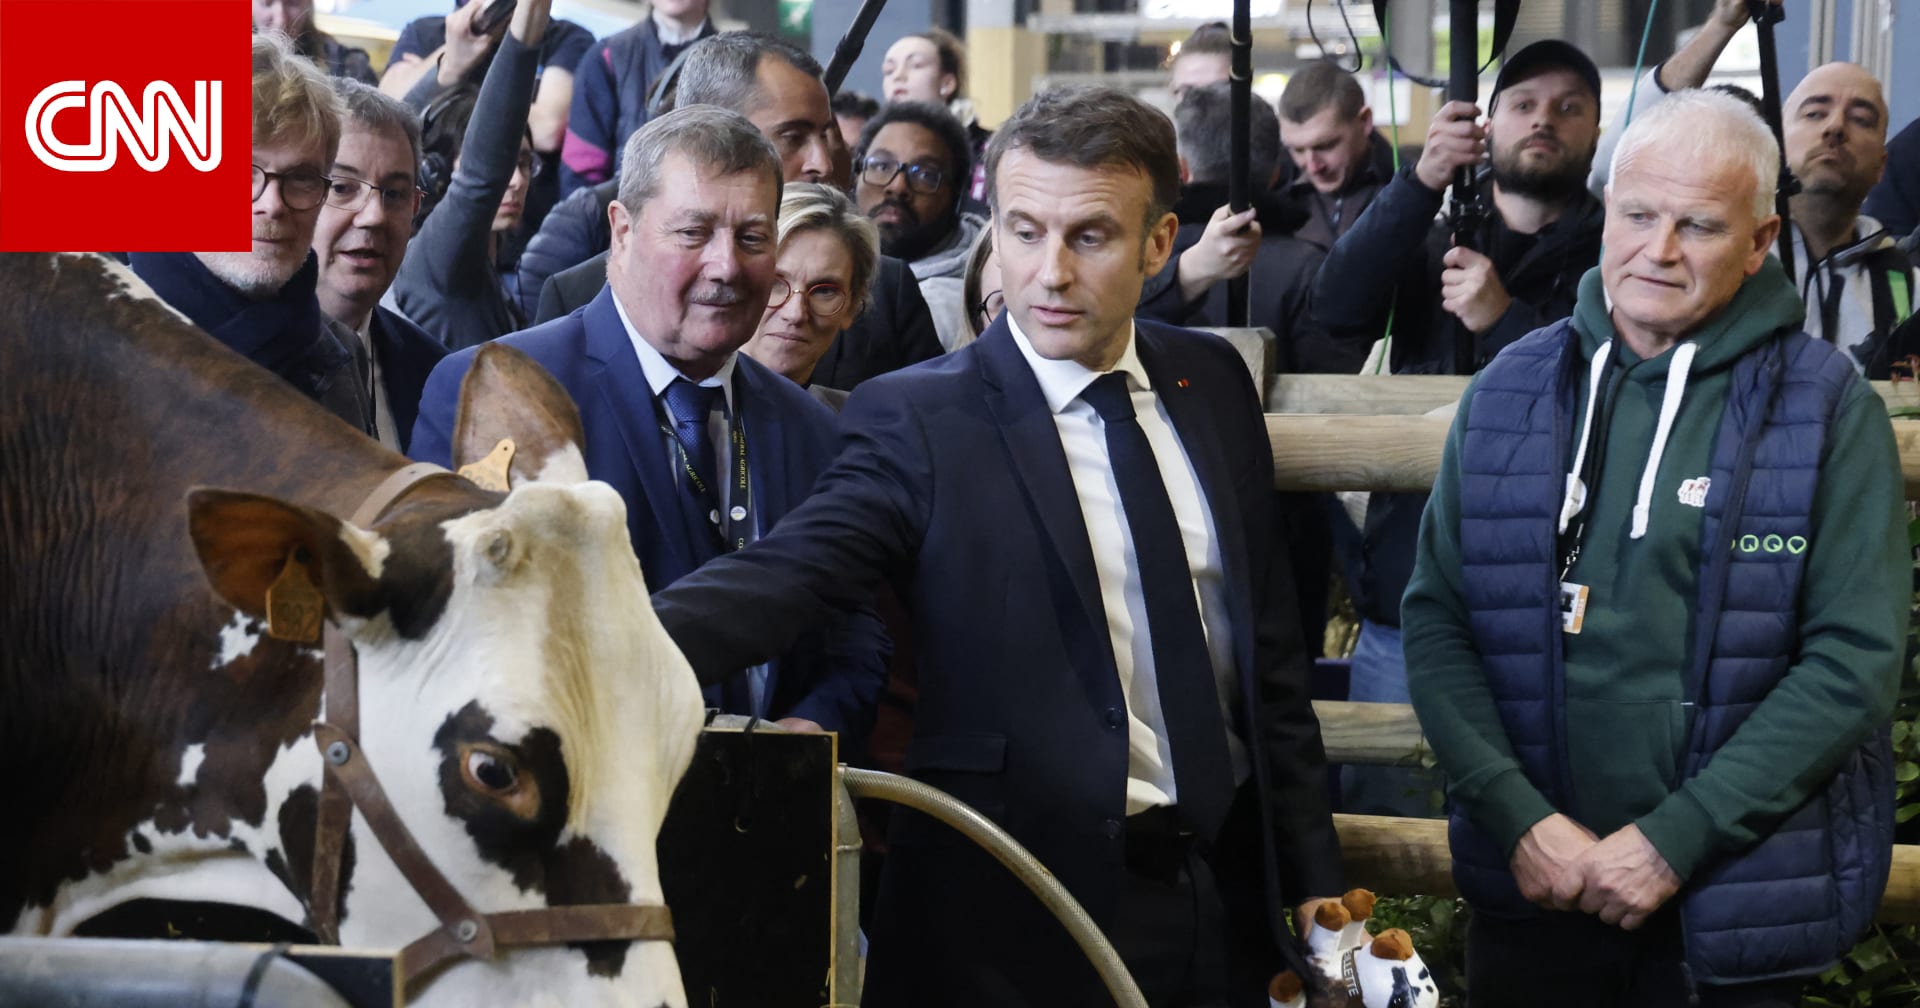 اقتحام معرض فرنسي من قبل مزارعين غاضبين خلال تواجد ماكرون داخله